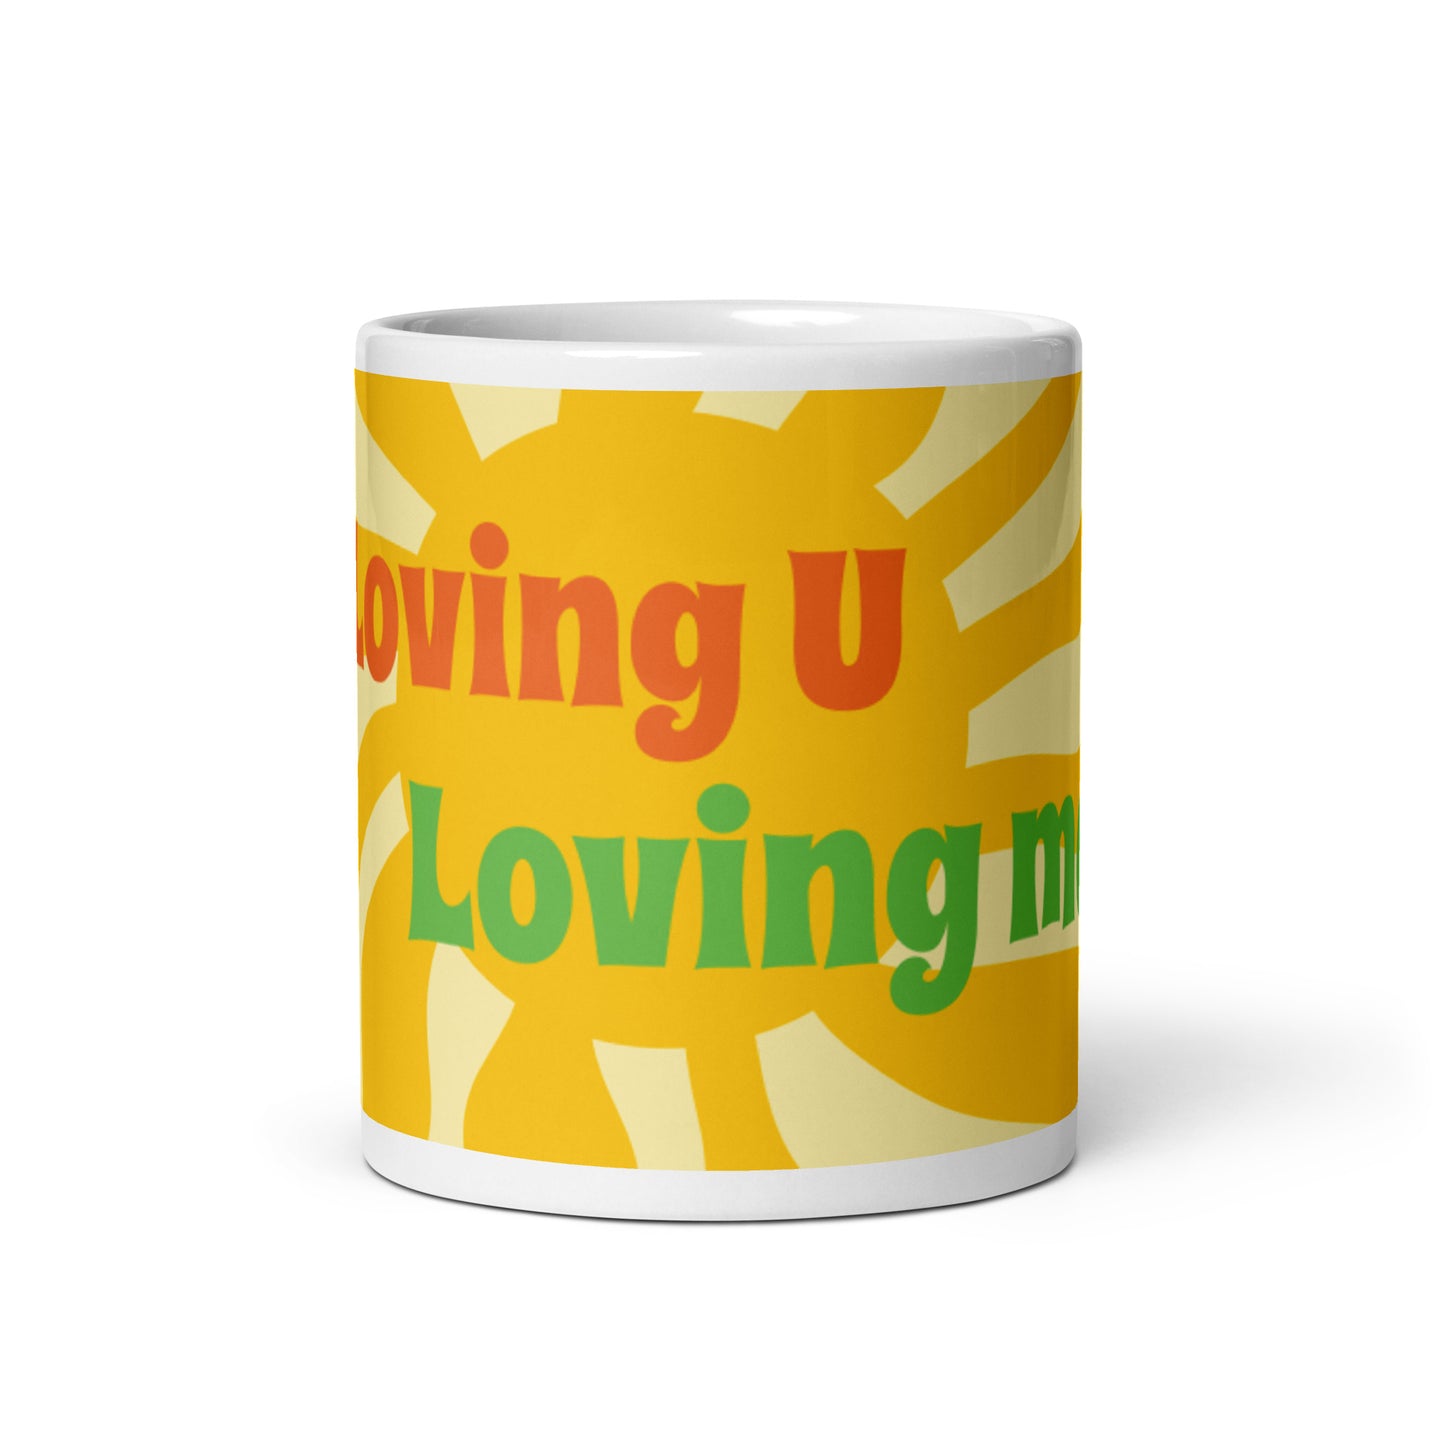 Sunshine White Glossy Mug - Loving U Loving me